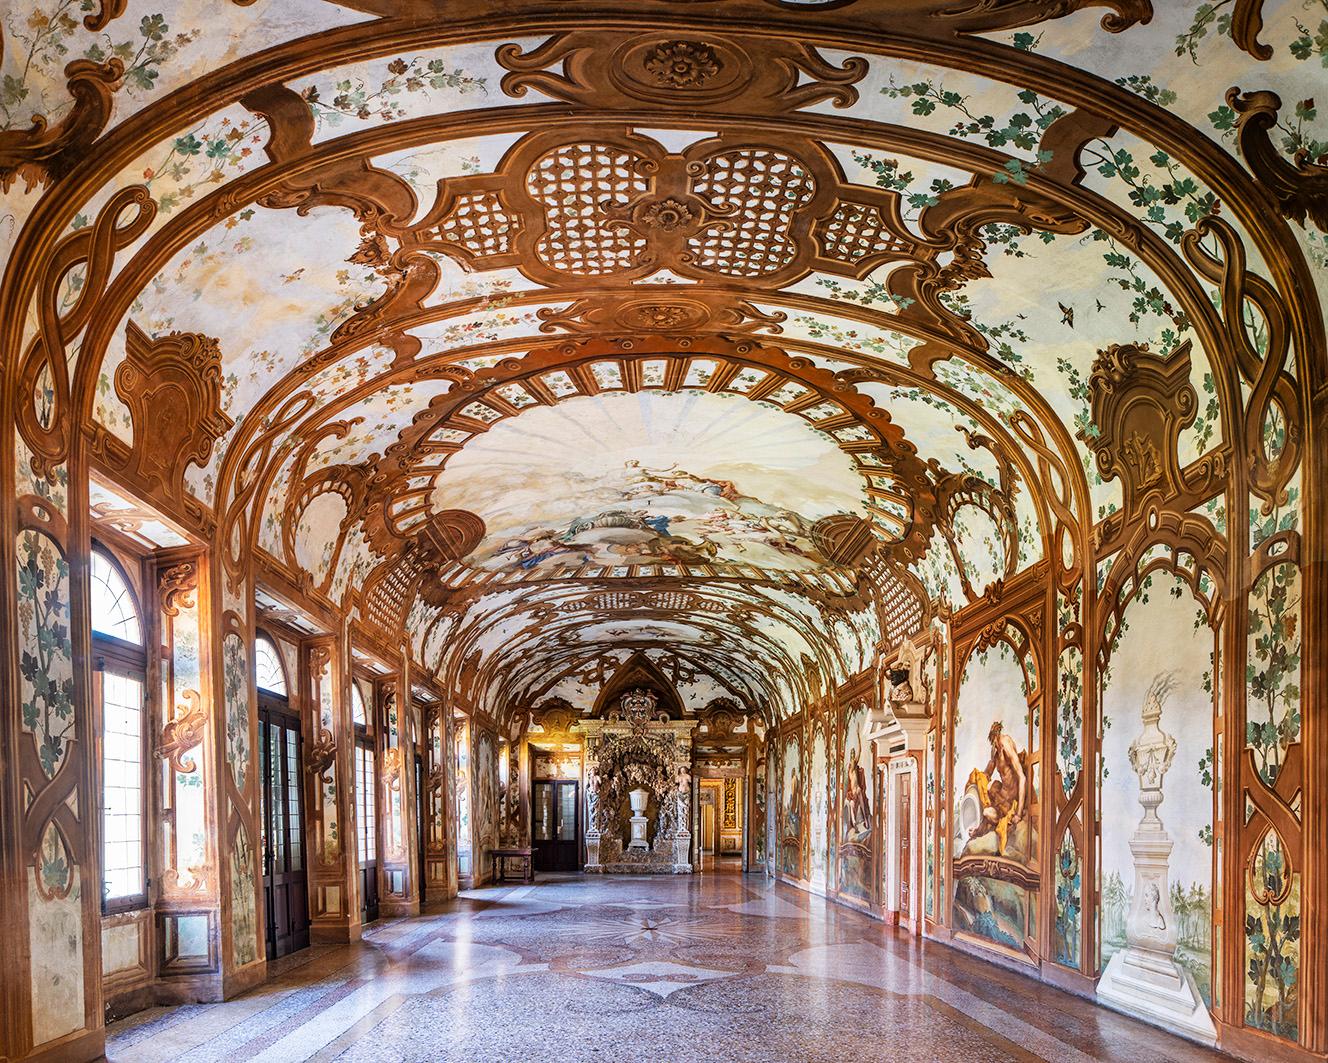 Sala dei Fiumi I (Halle der Flüsse), Herzogspalast von Mantua